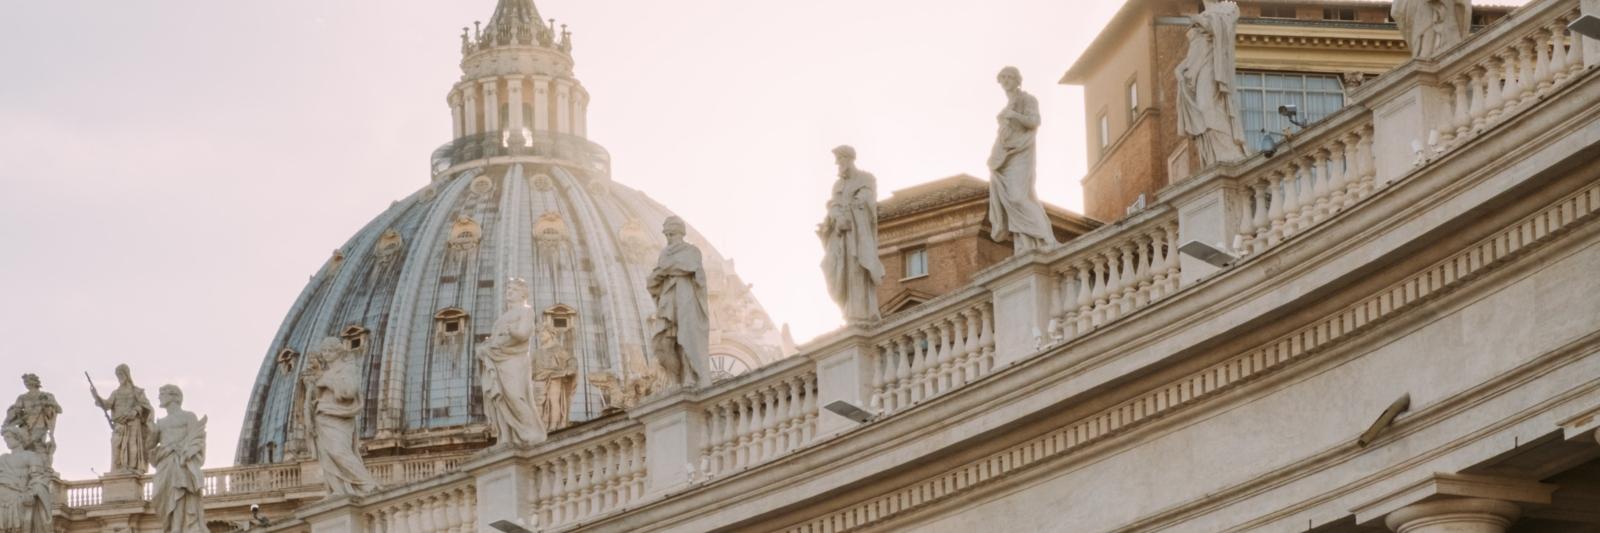 Vatikanische Dächer